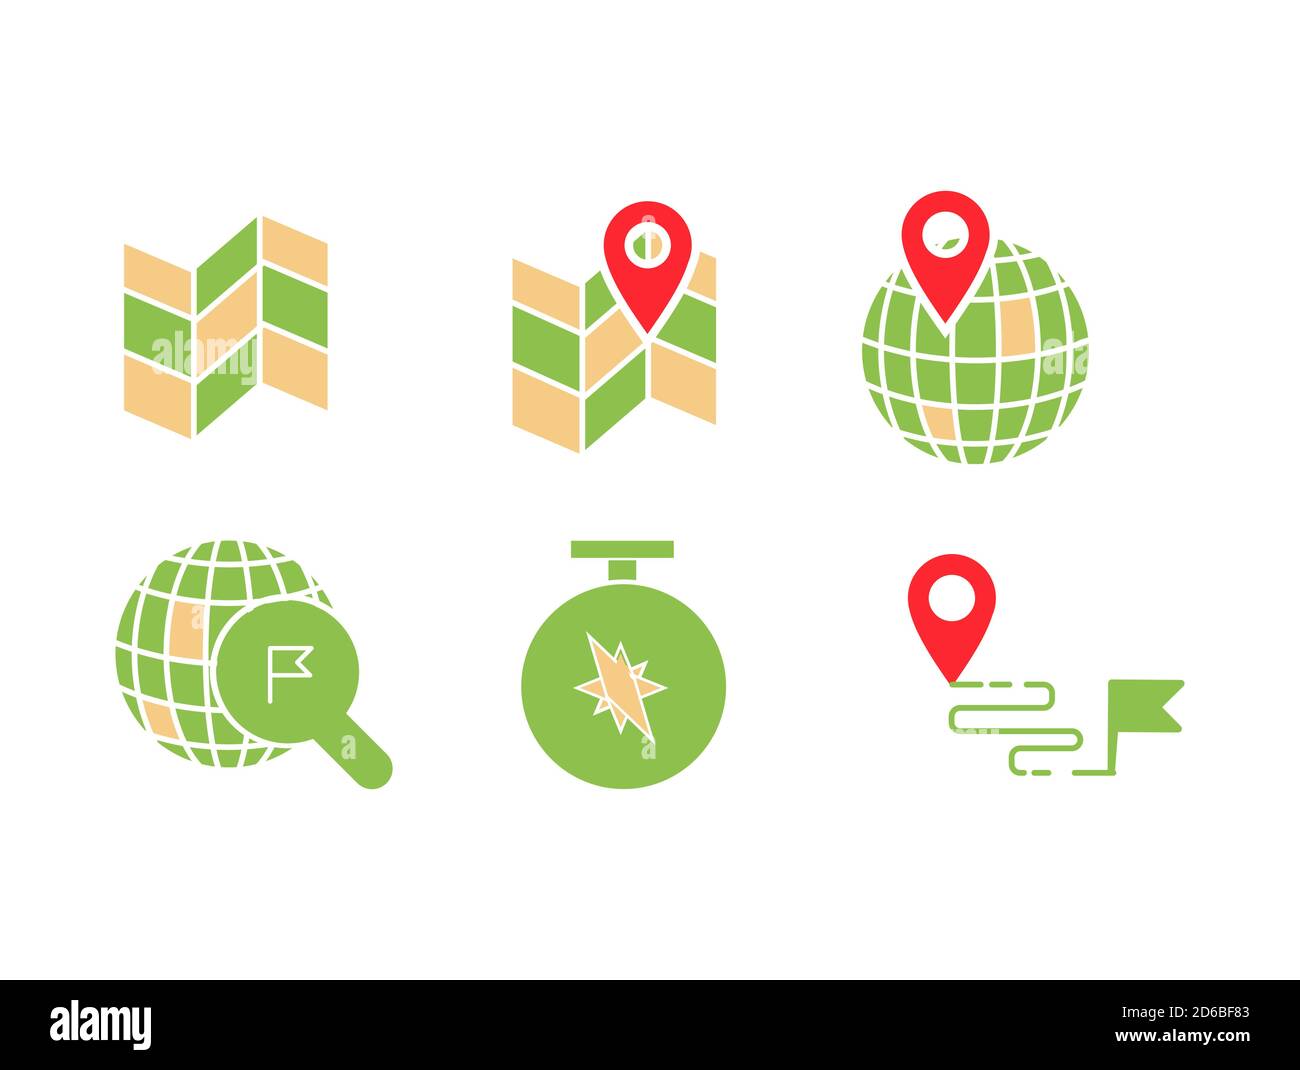 Icône de position géographique définie avec carte, PIN, monde avec PIN, recherche de position, boussole et indicateur de destination, Illustration de Vecteur